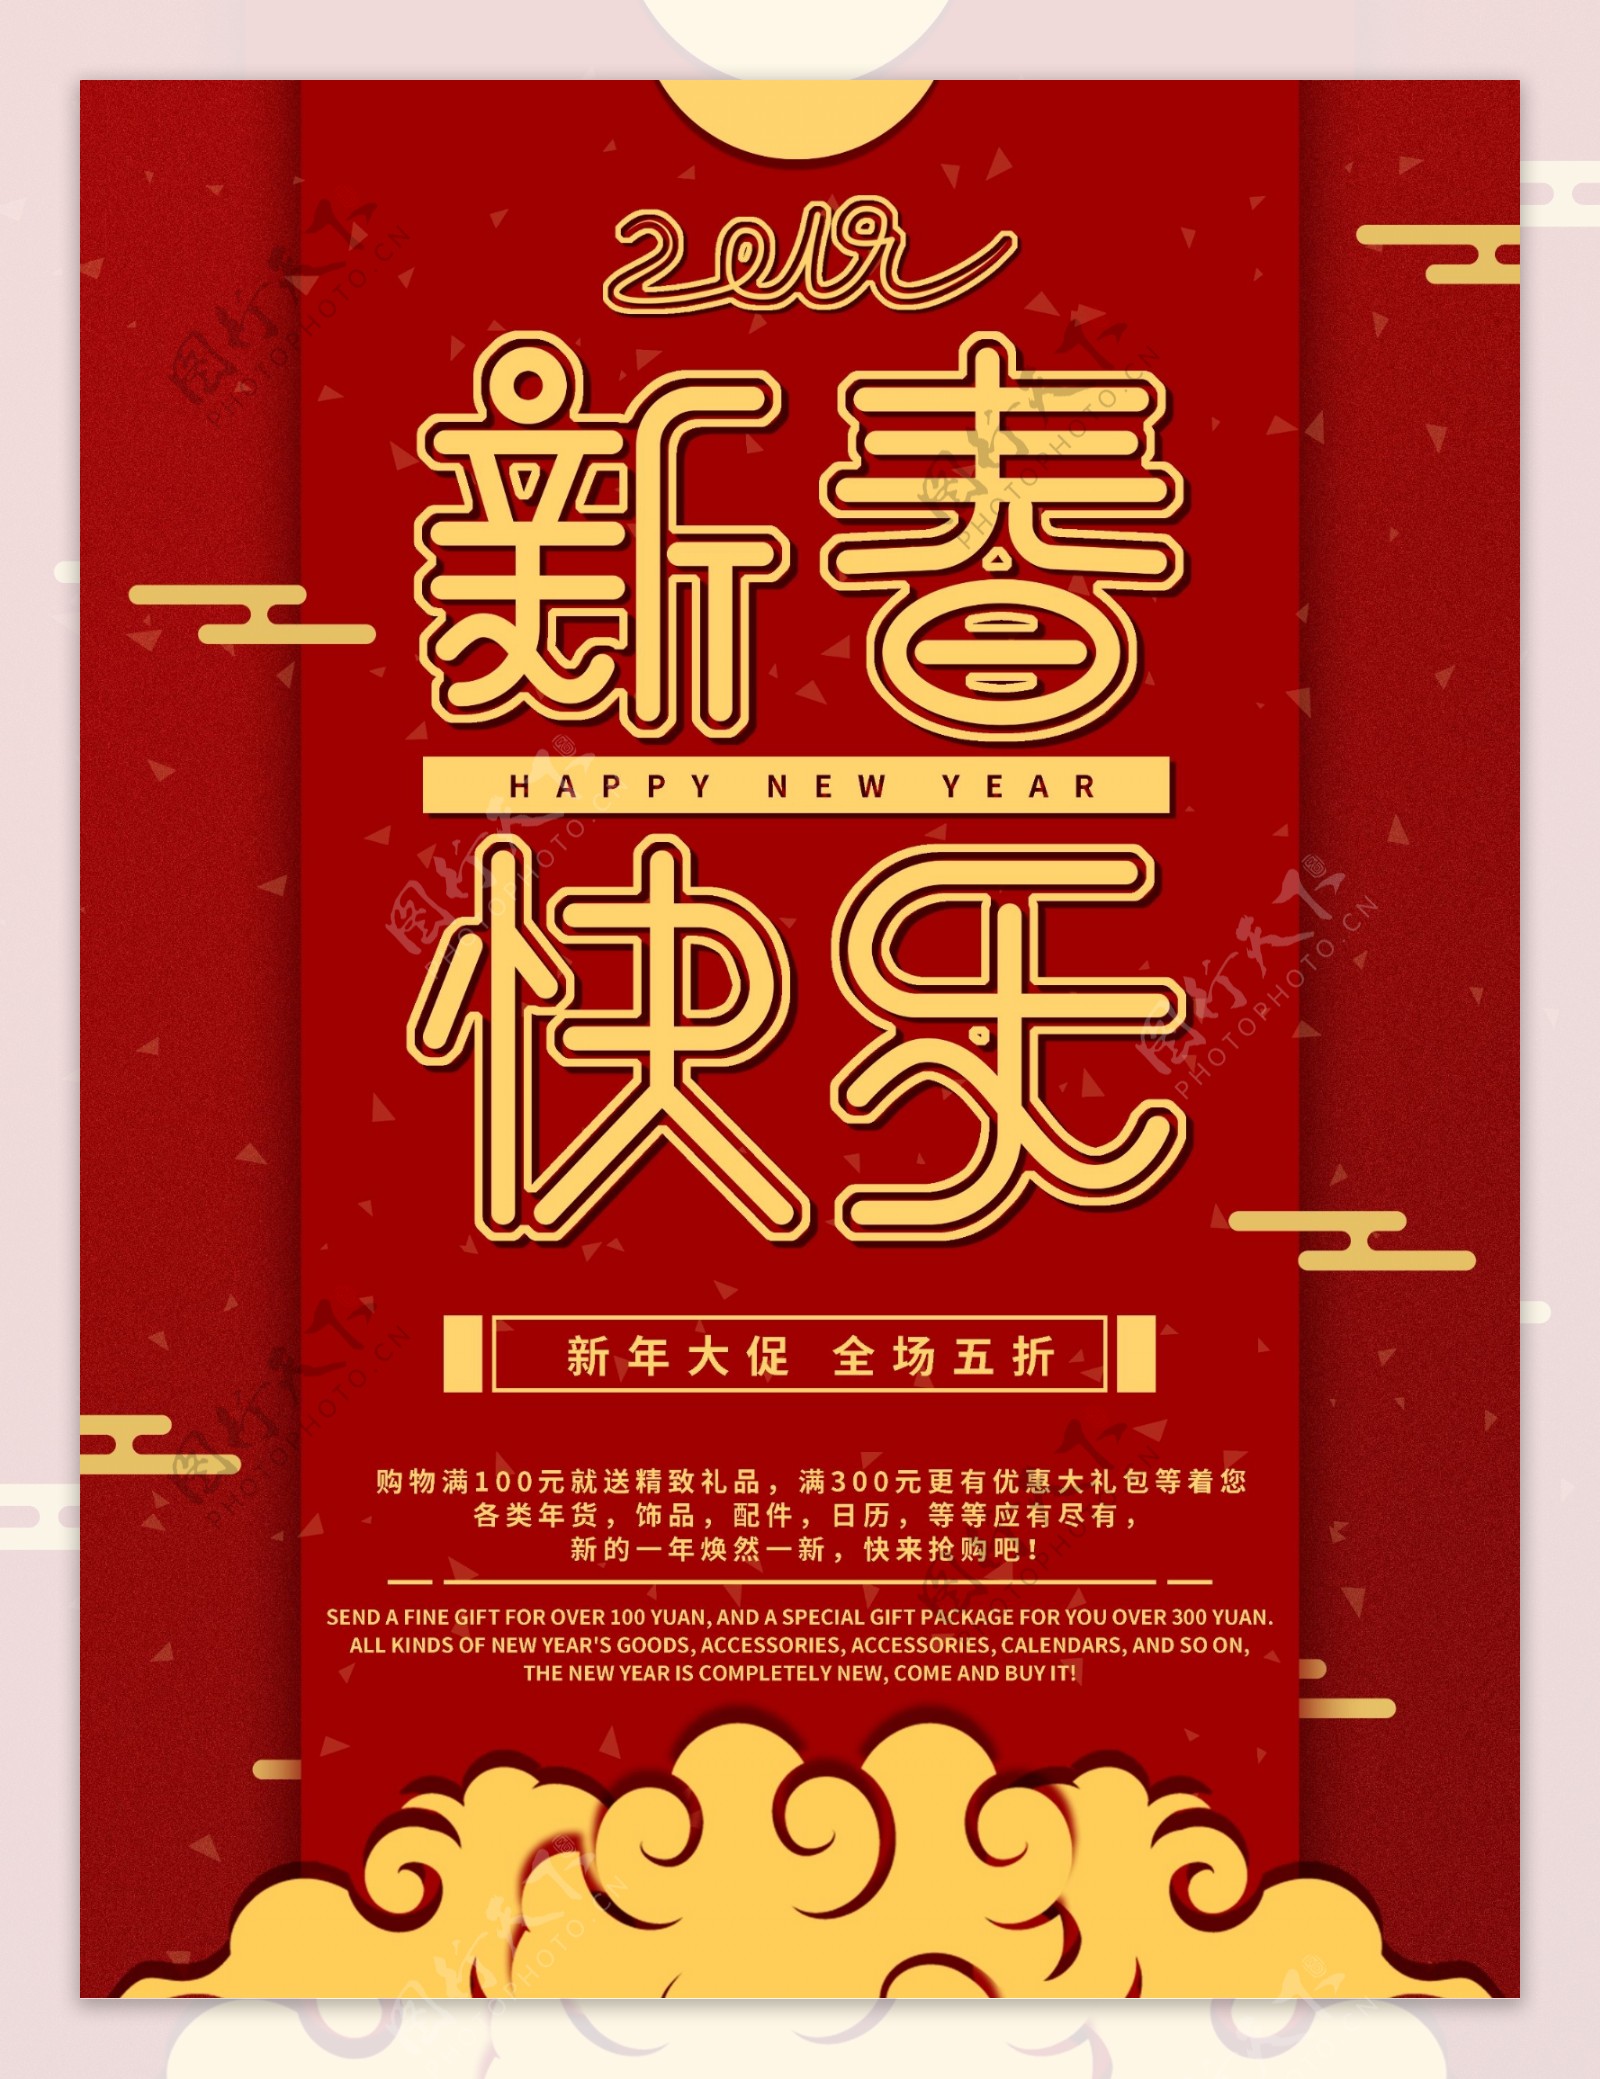 原创红金色喜庆新春快乐节日促销海报